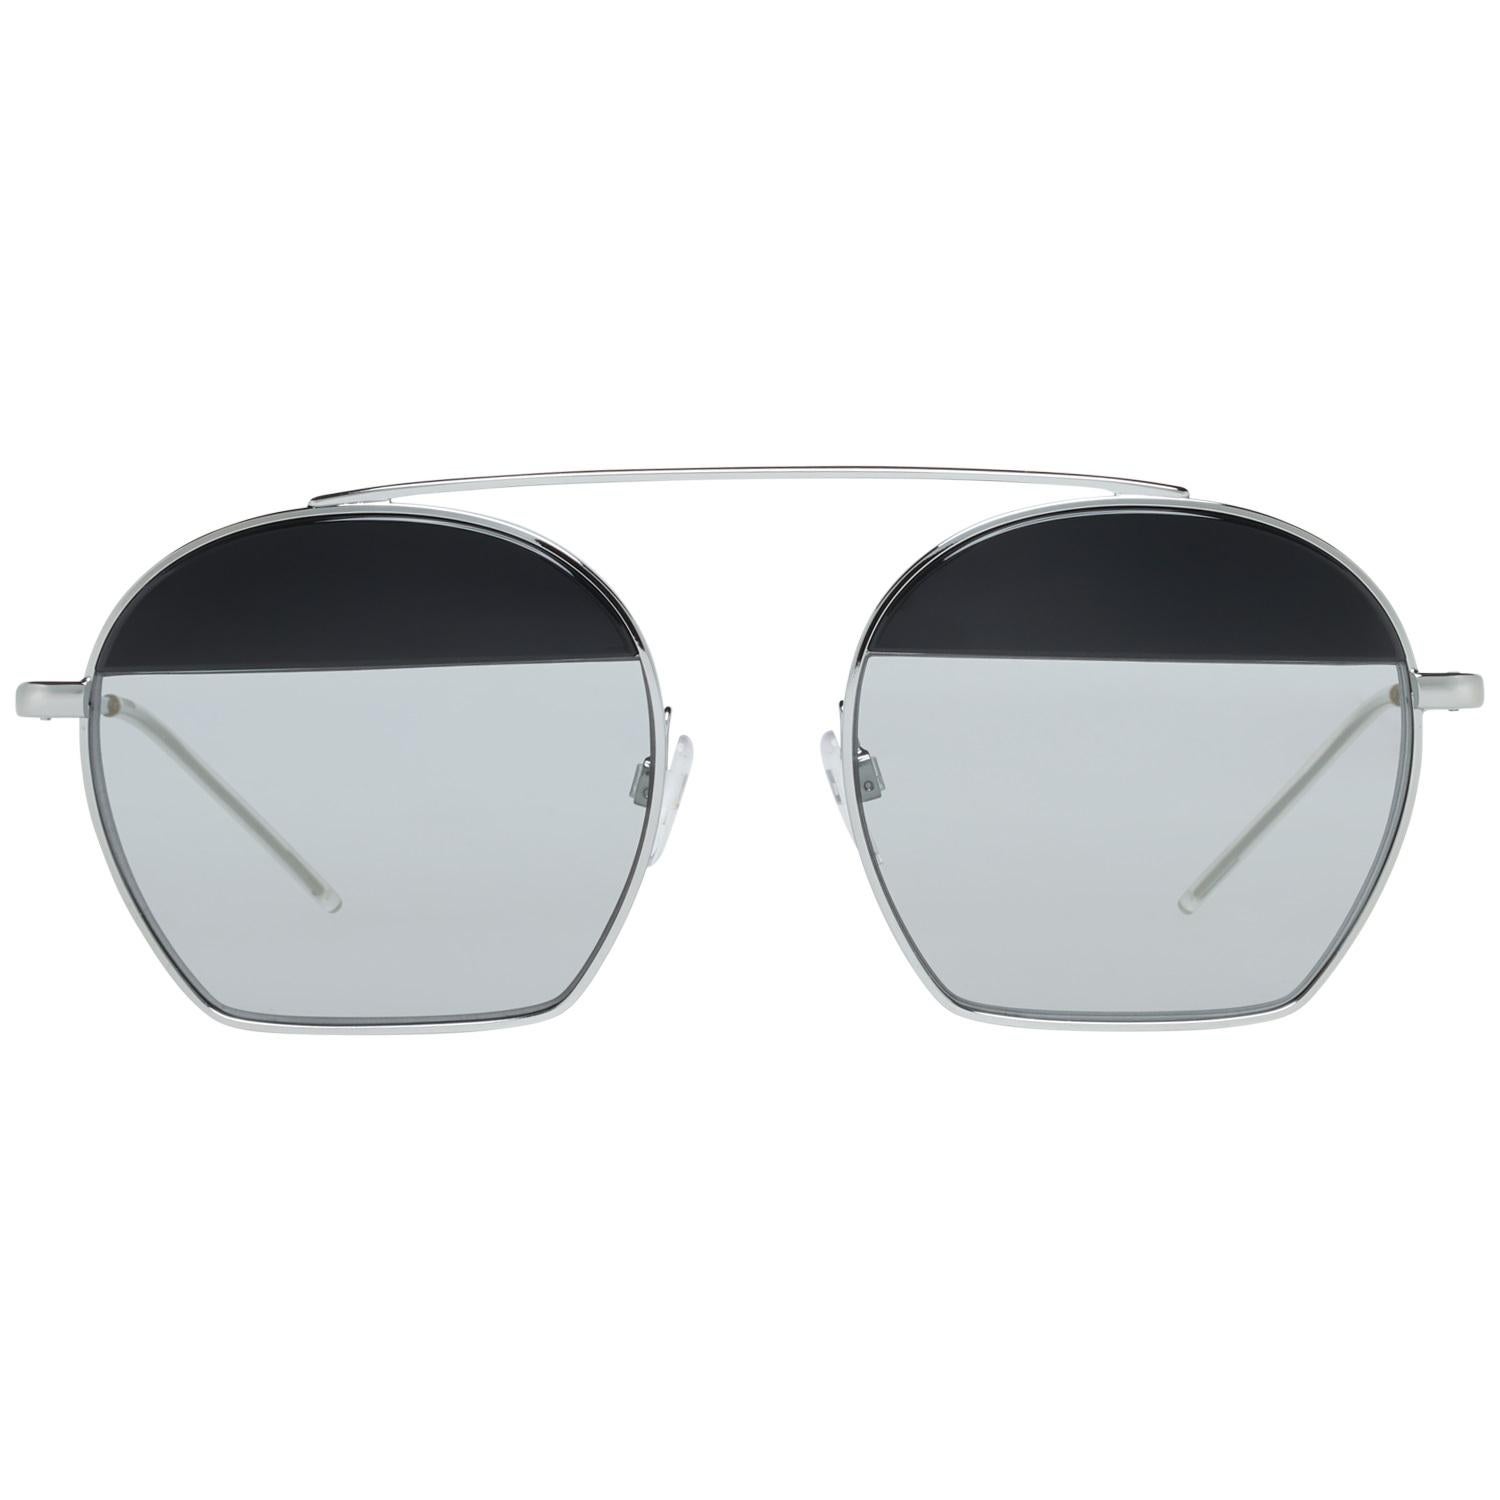 Emporio Armani Mint Unisex Silver Sunglasses EA2086 30156G56 56-19-143 mm 2